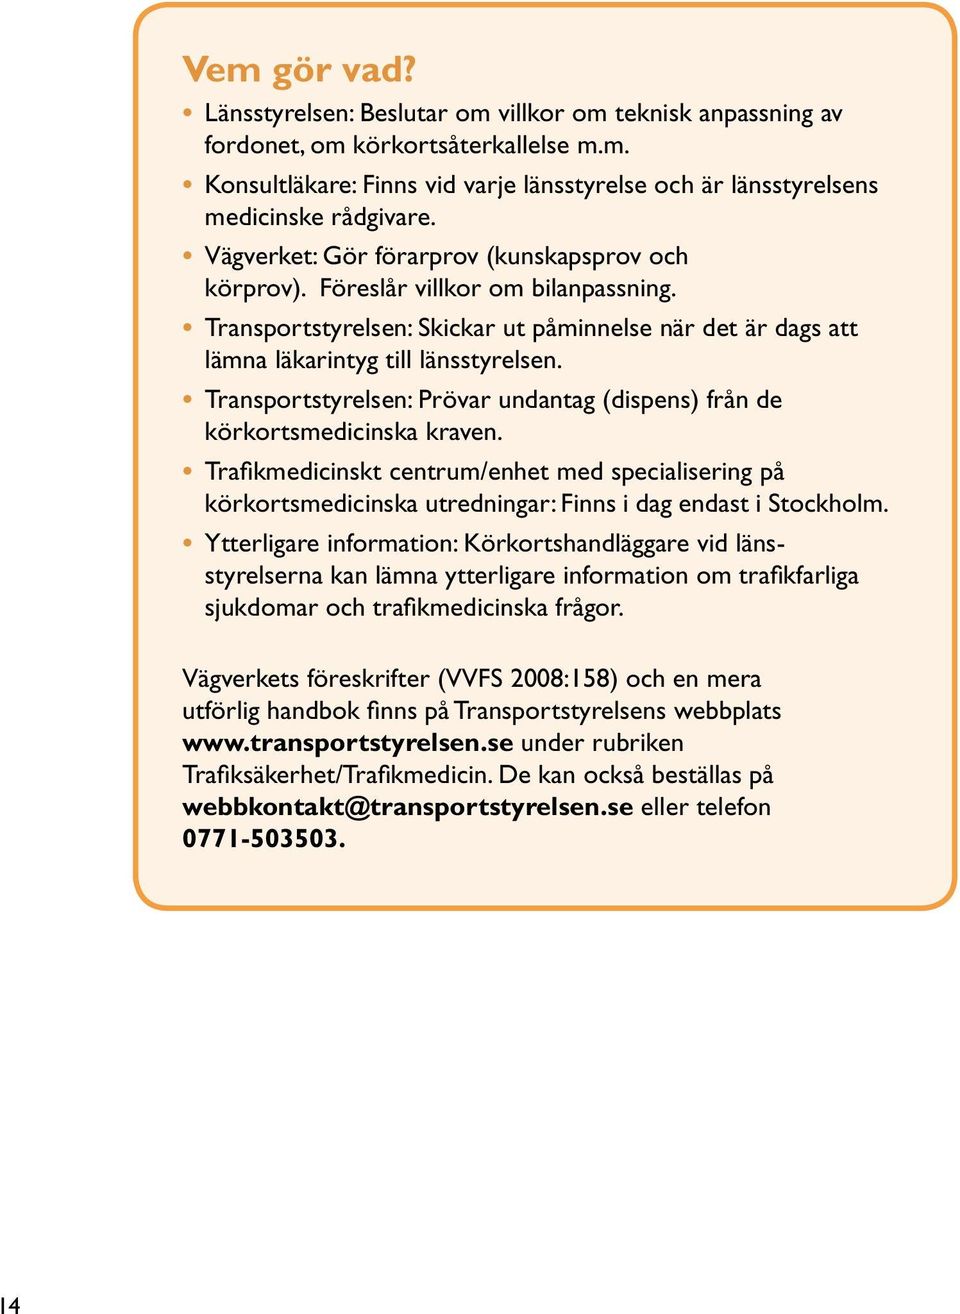 Transportstyrelsen: Prövar undantag (dispens) från de körkortsmedicinska kraven. Trafikmedicinskt centrum/enhet med specialisering på körkortsmedicinska utredningar: Finns i dag endast i Stockholm.